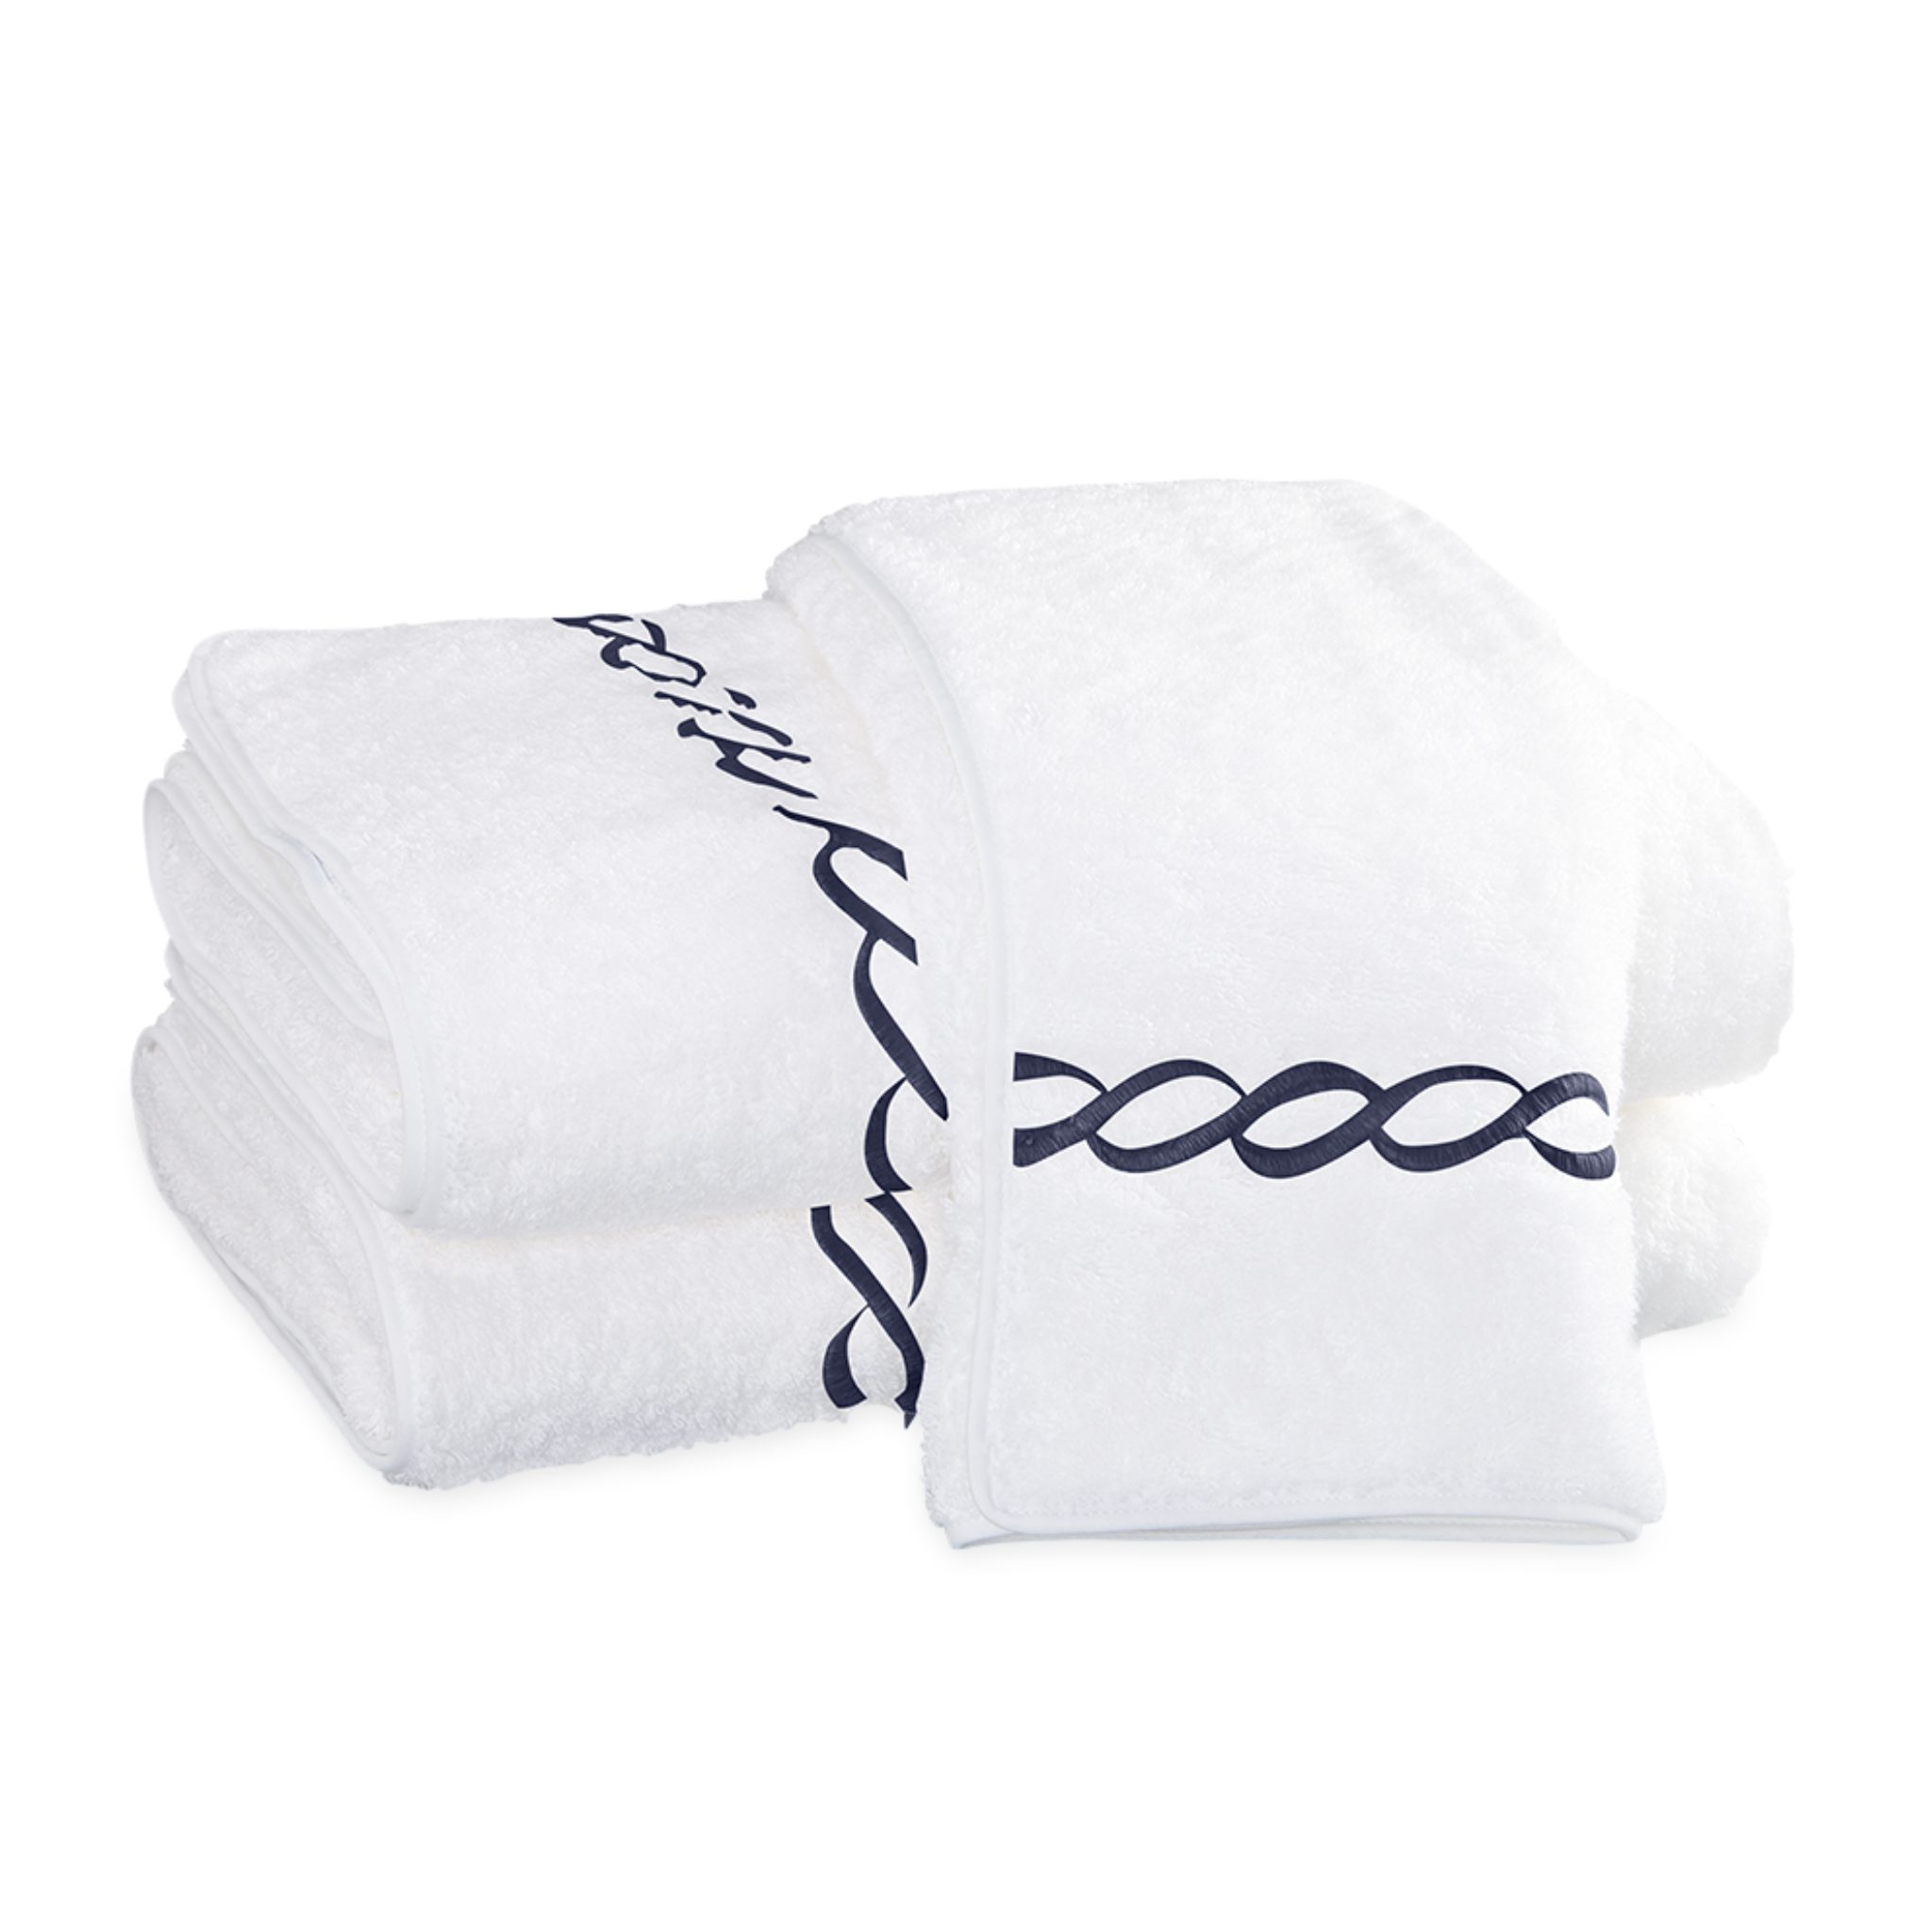 https://flandb.com/cdn/shop/files/Matouk-Classic-Chain-Luxury-Bath-Towel-Navy_2048x.png?v=1685332387